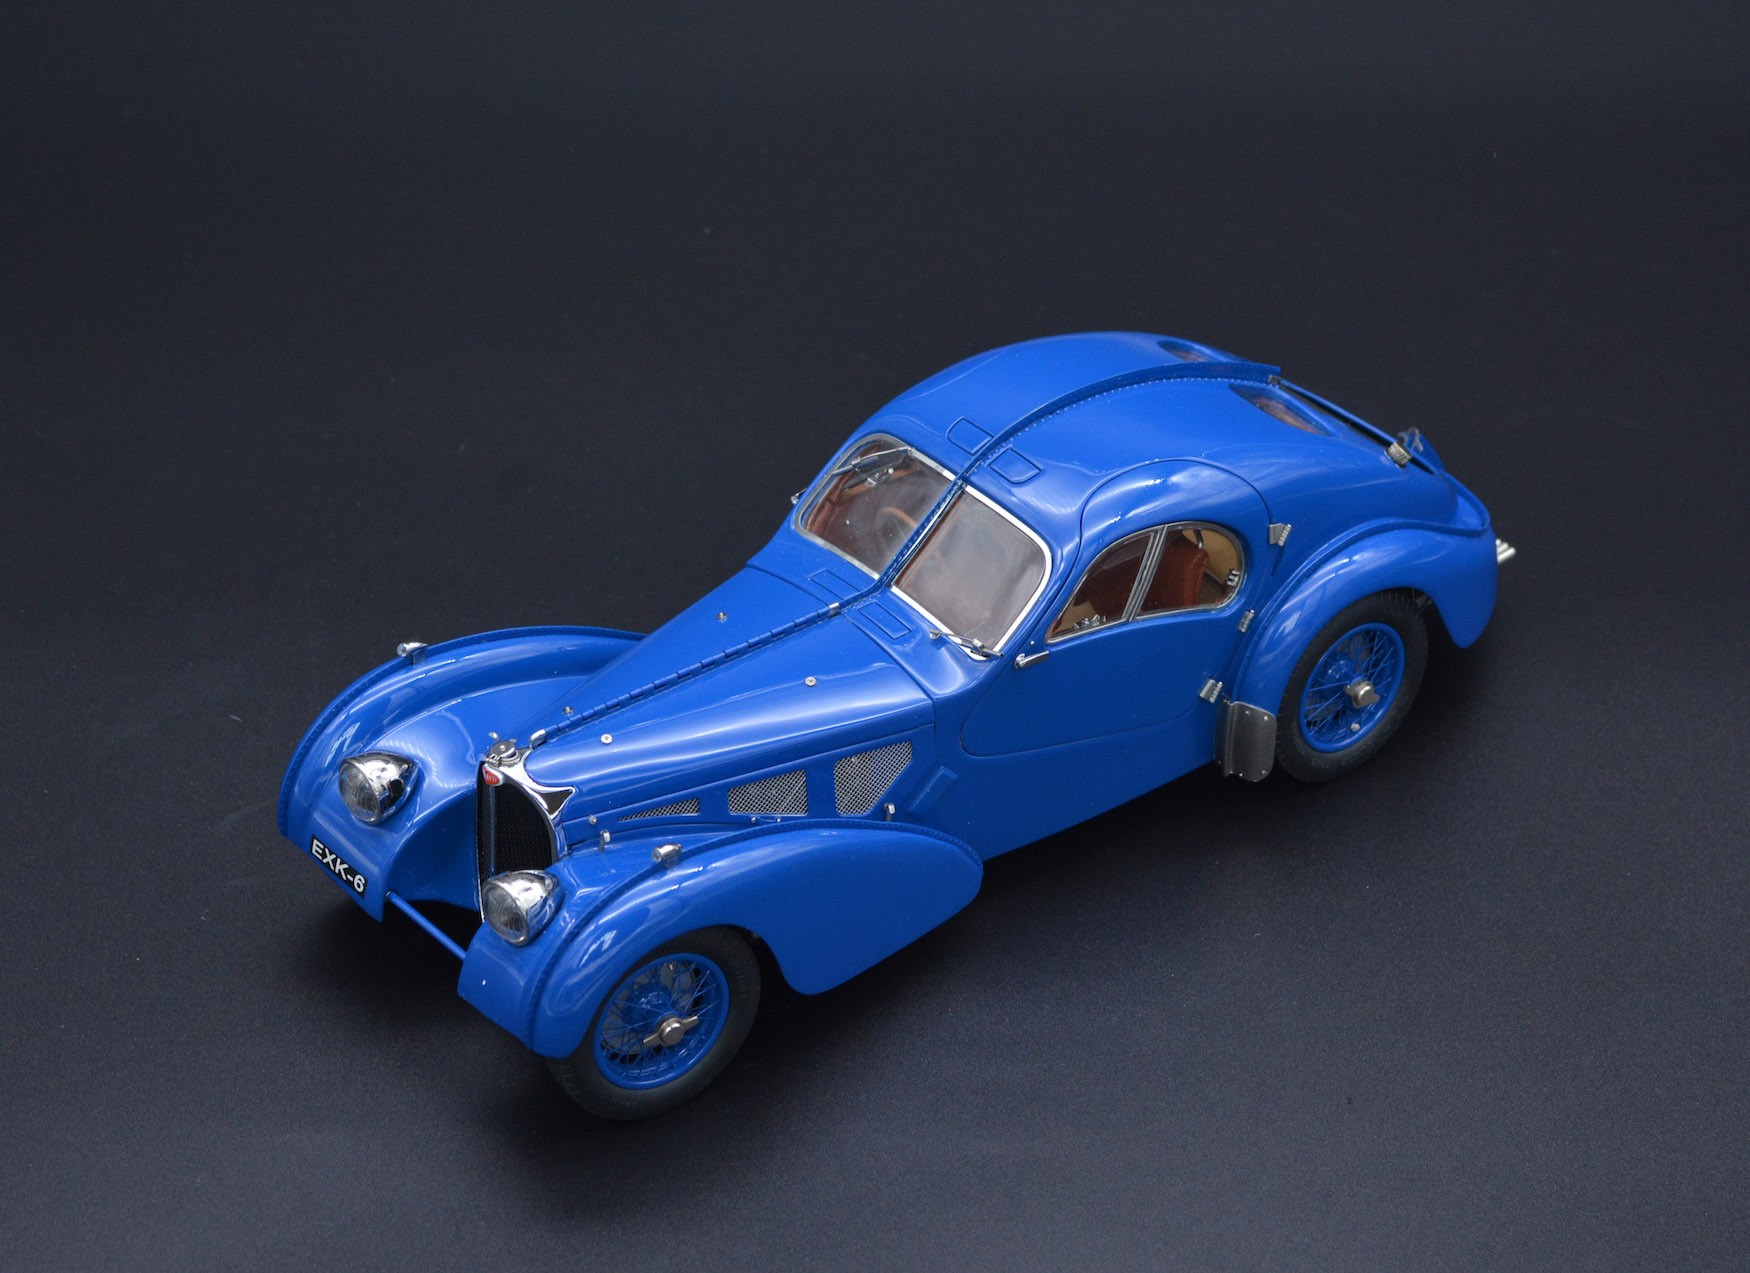 1:18 BUGATTI TYPE 57 SC ATLANTIC COUPE BY CMCIn 1936, Bugatti 